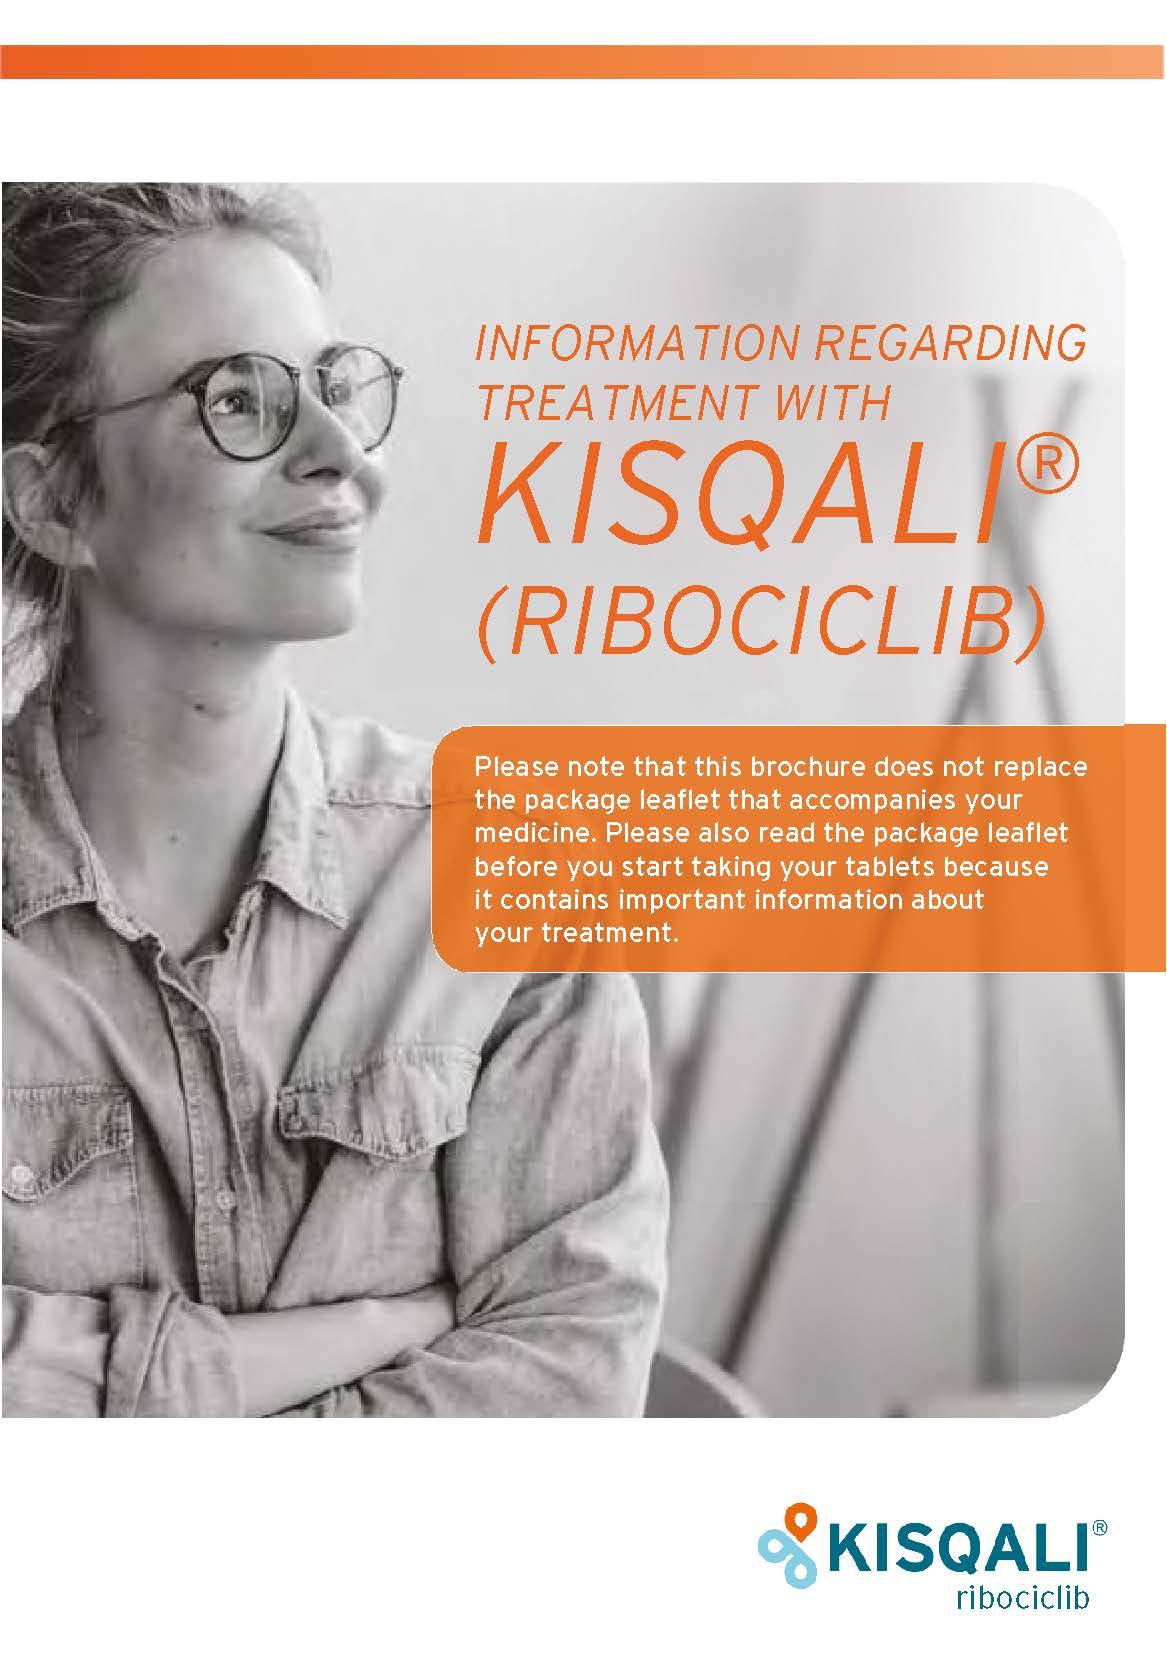 Framsidan på broschyr för premenomausala kvinnor som behandlas med Kisqali.